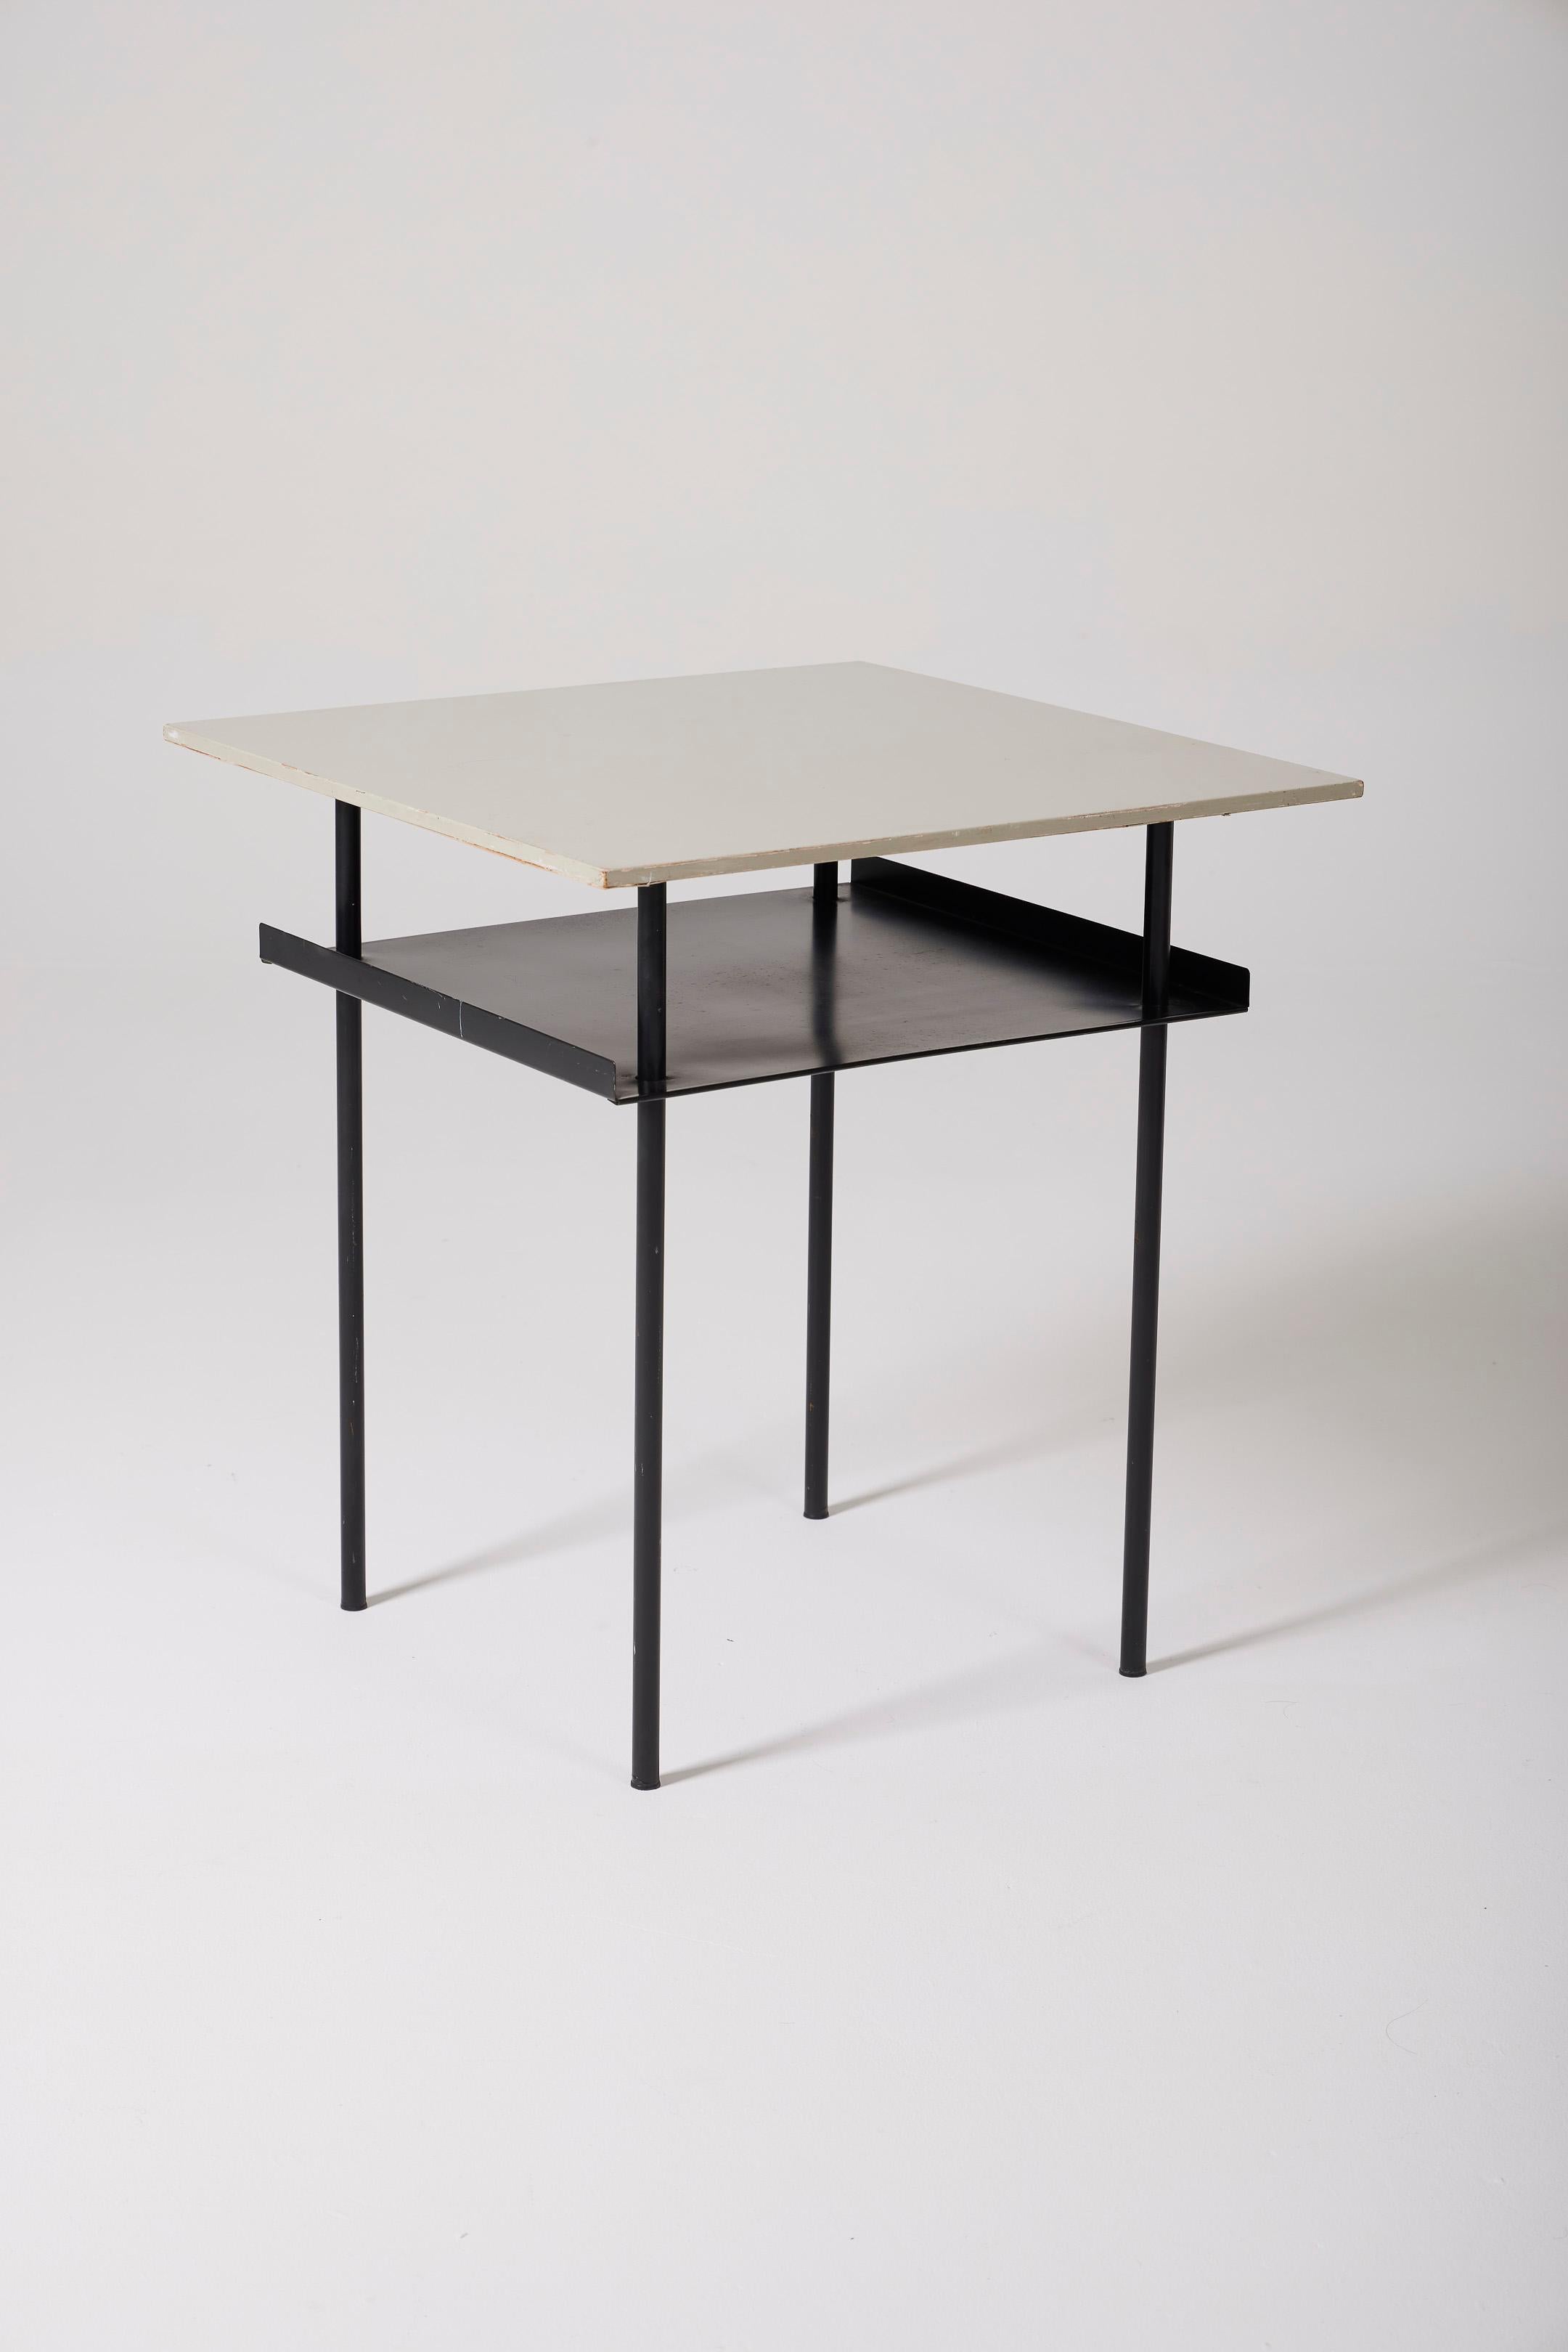  Mesa auxiliar del diseñador holandés Wim Rietveld (1924-1985) en la década de 1950. La mesa tiene un tablero de madera lacada en blanco y una estructura tubular de metal lacado en negro. Incluye un estante adicional bajo la tapa, lo que hace que